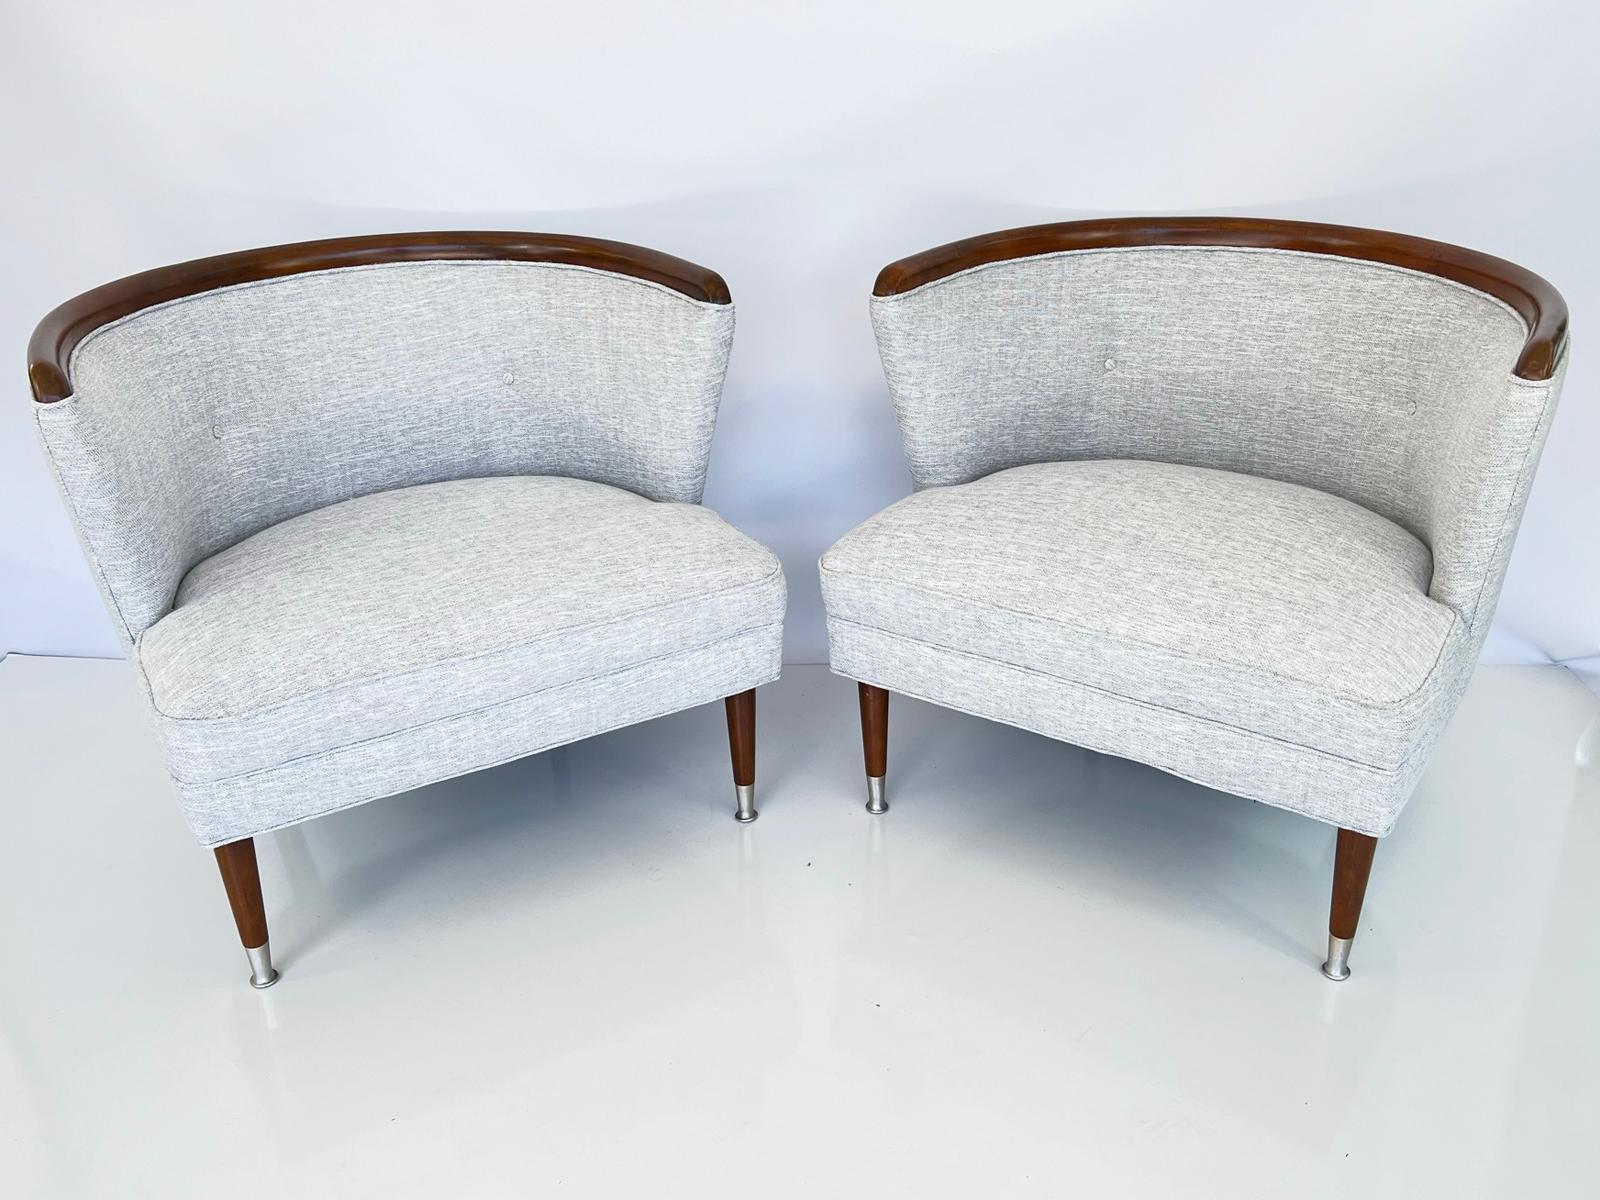 Paire de fauteuils bergère de style barrique du milieu du siècle dernier, tapissés de lin bleu/gris. Chaque chaise en forme de baignoire possède une crête arquée en noyer surmontant un dossier rembourré et touffeté. Un coussin ample et tombant